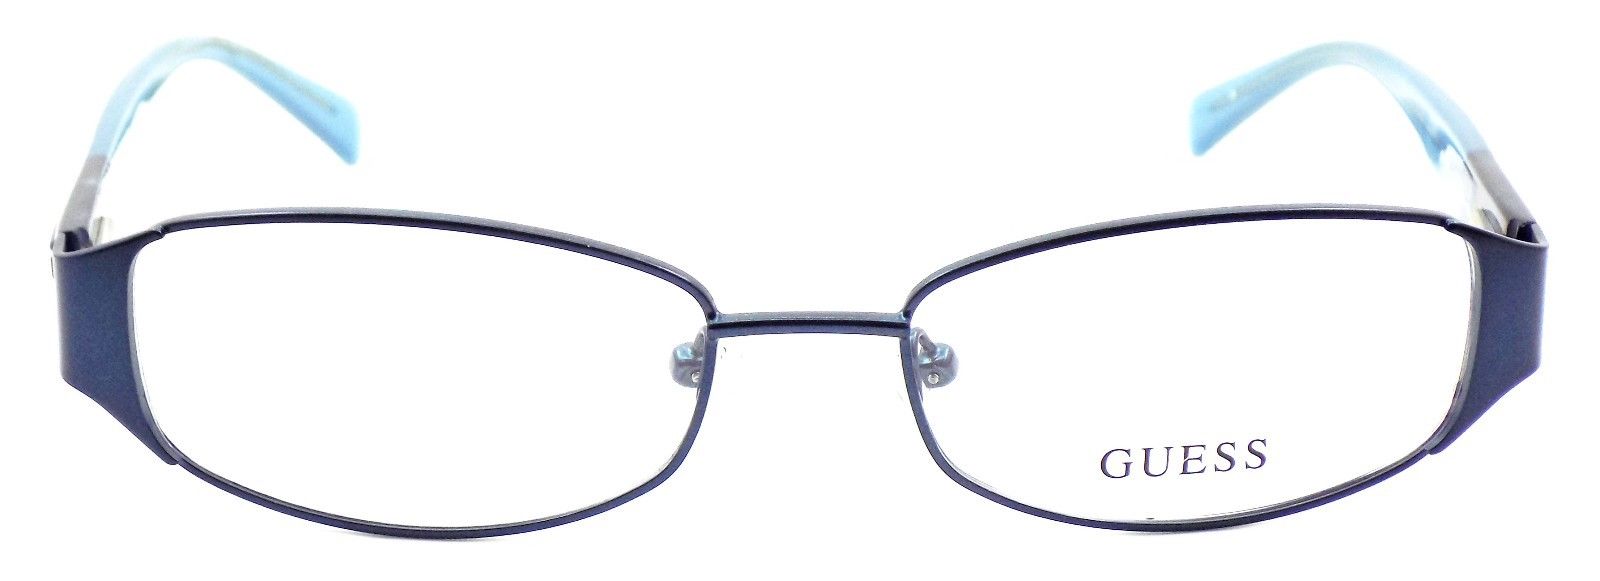 2-GUESS GU2411 BL Women's Eyeglasses Frames 52-17-135 Blue + CASE-715583959866-IKSpecs